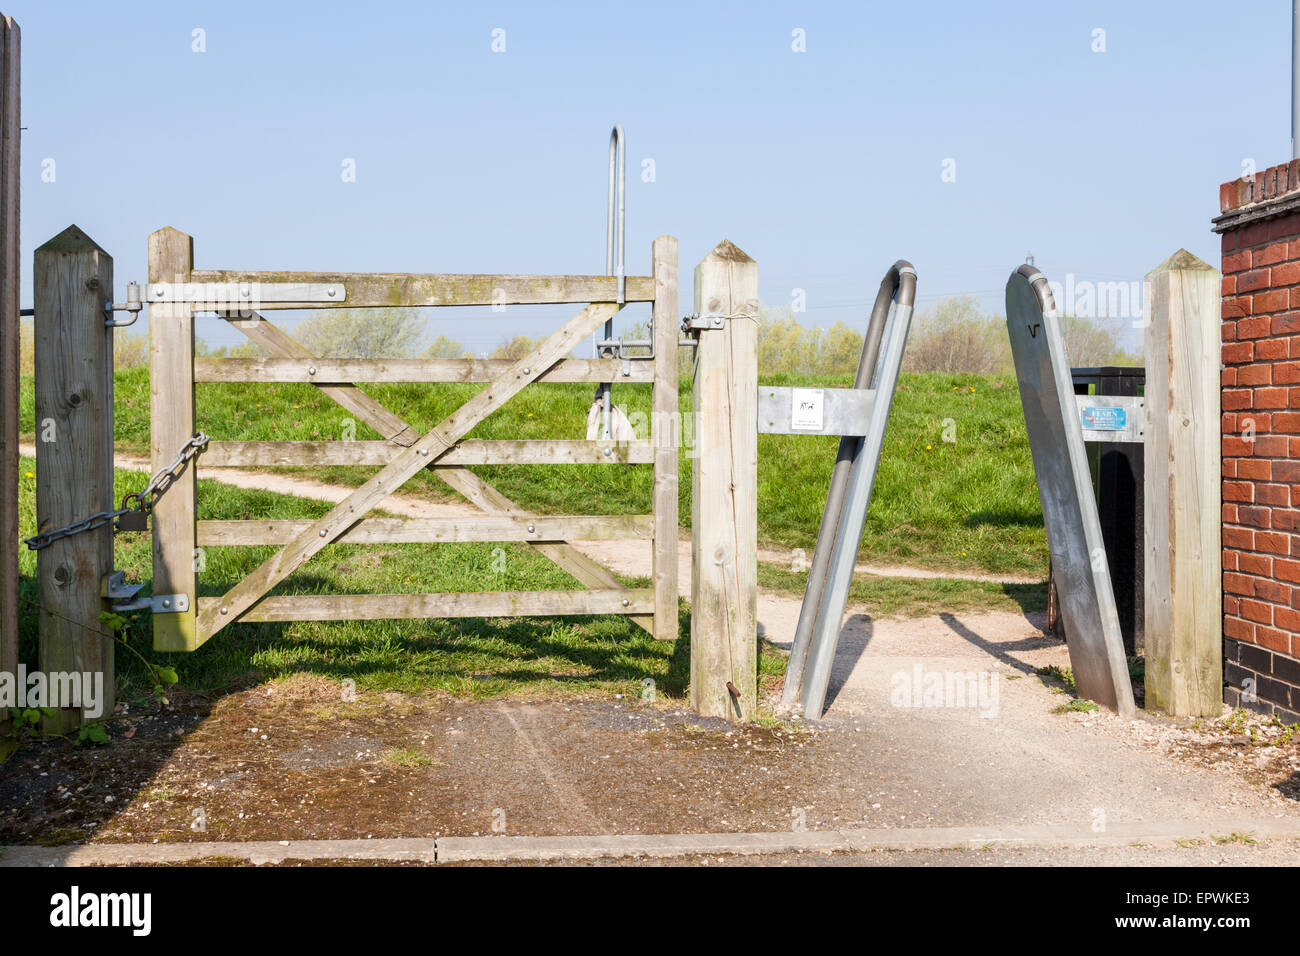 Cinque bar cancello di legno e un telaio a barriera utilizzata per limitare l'accesso, Nottingham, Inghilterra, Regno Unito Foto Stock